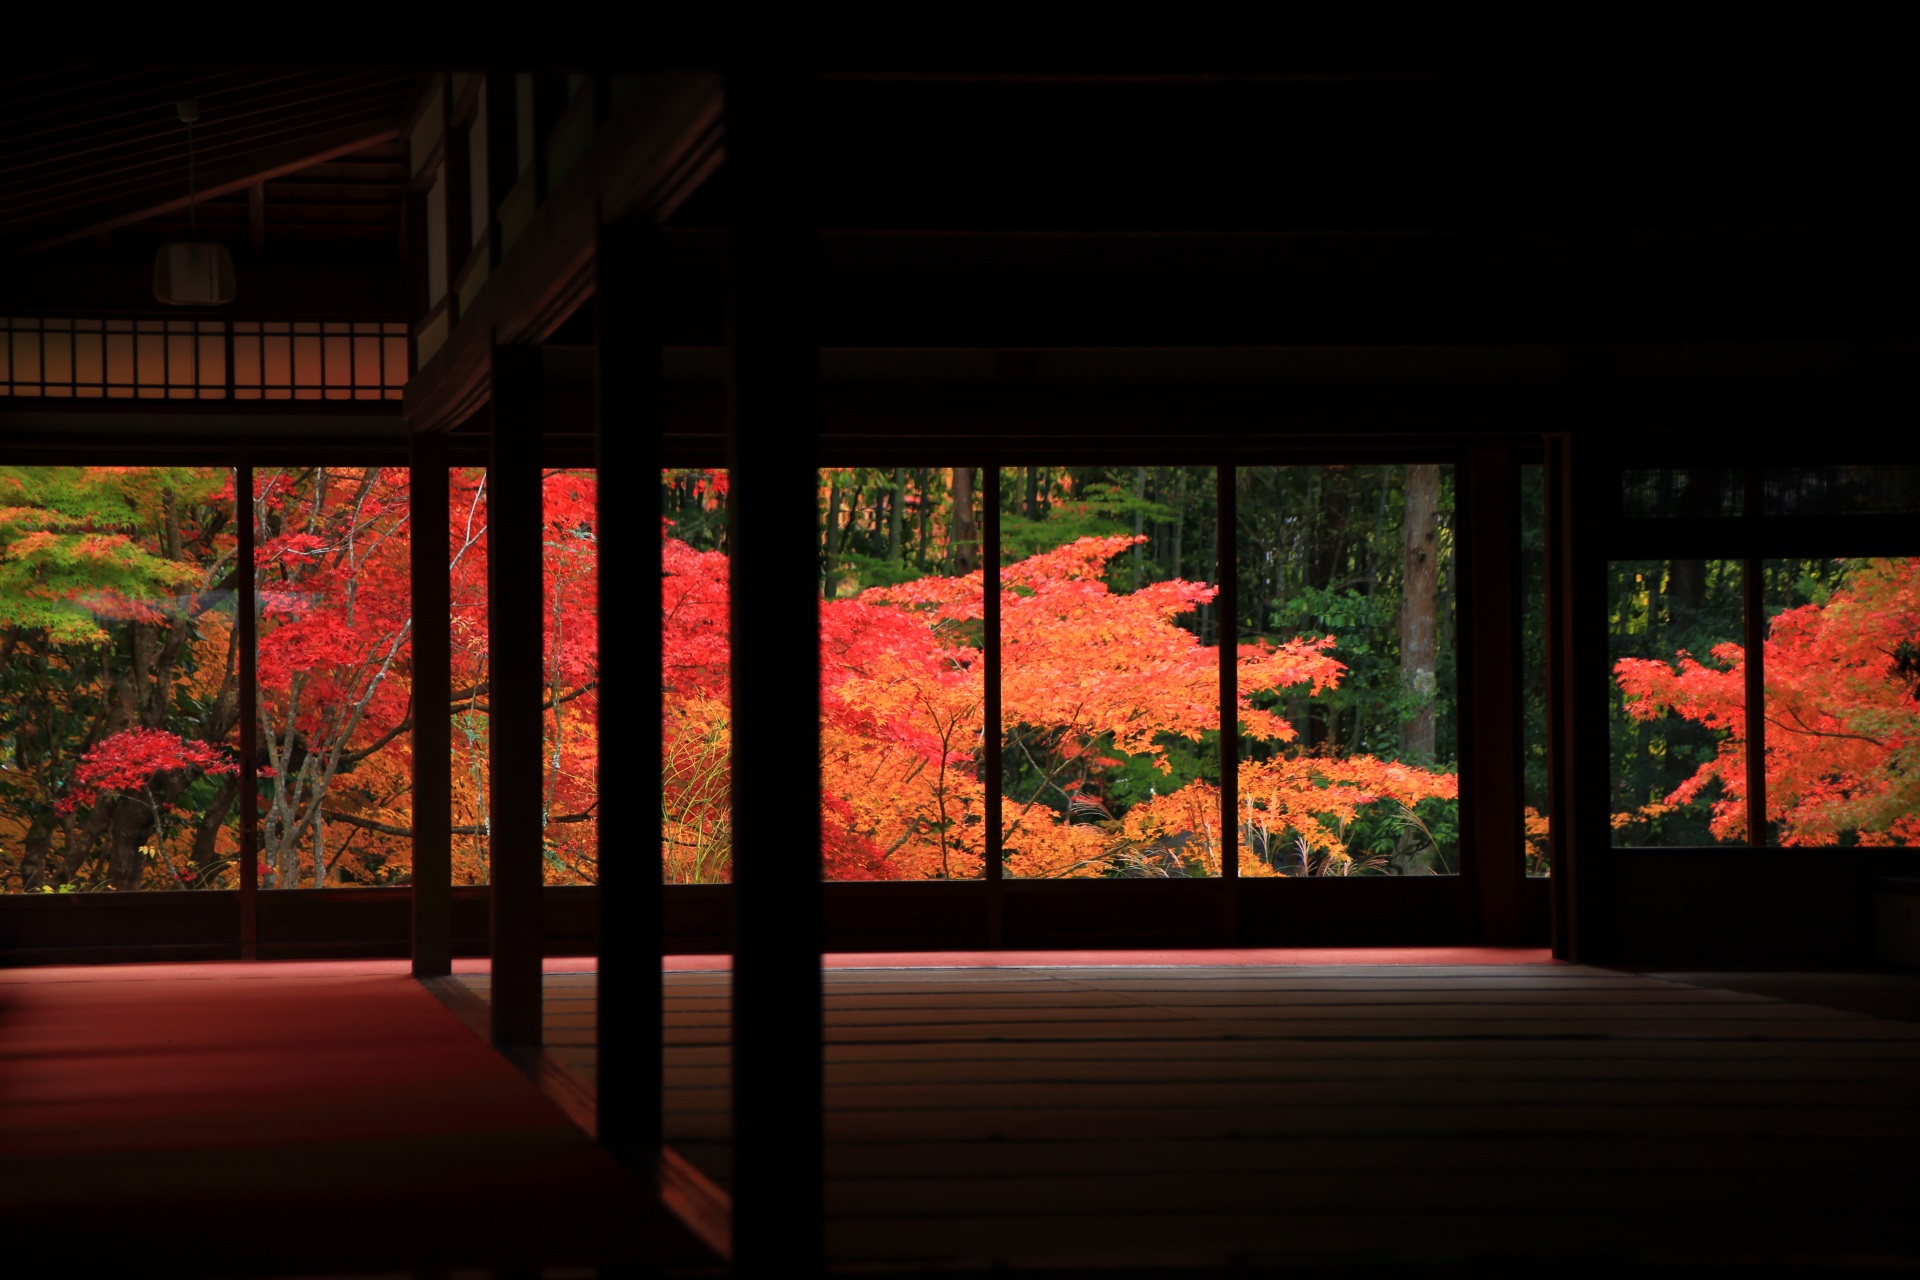 鮮やかな秋色が浮かび上がる独特の見事な天授庵の情景